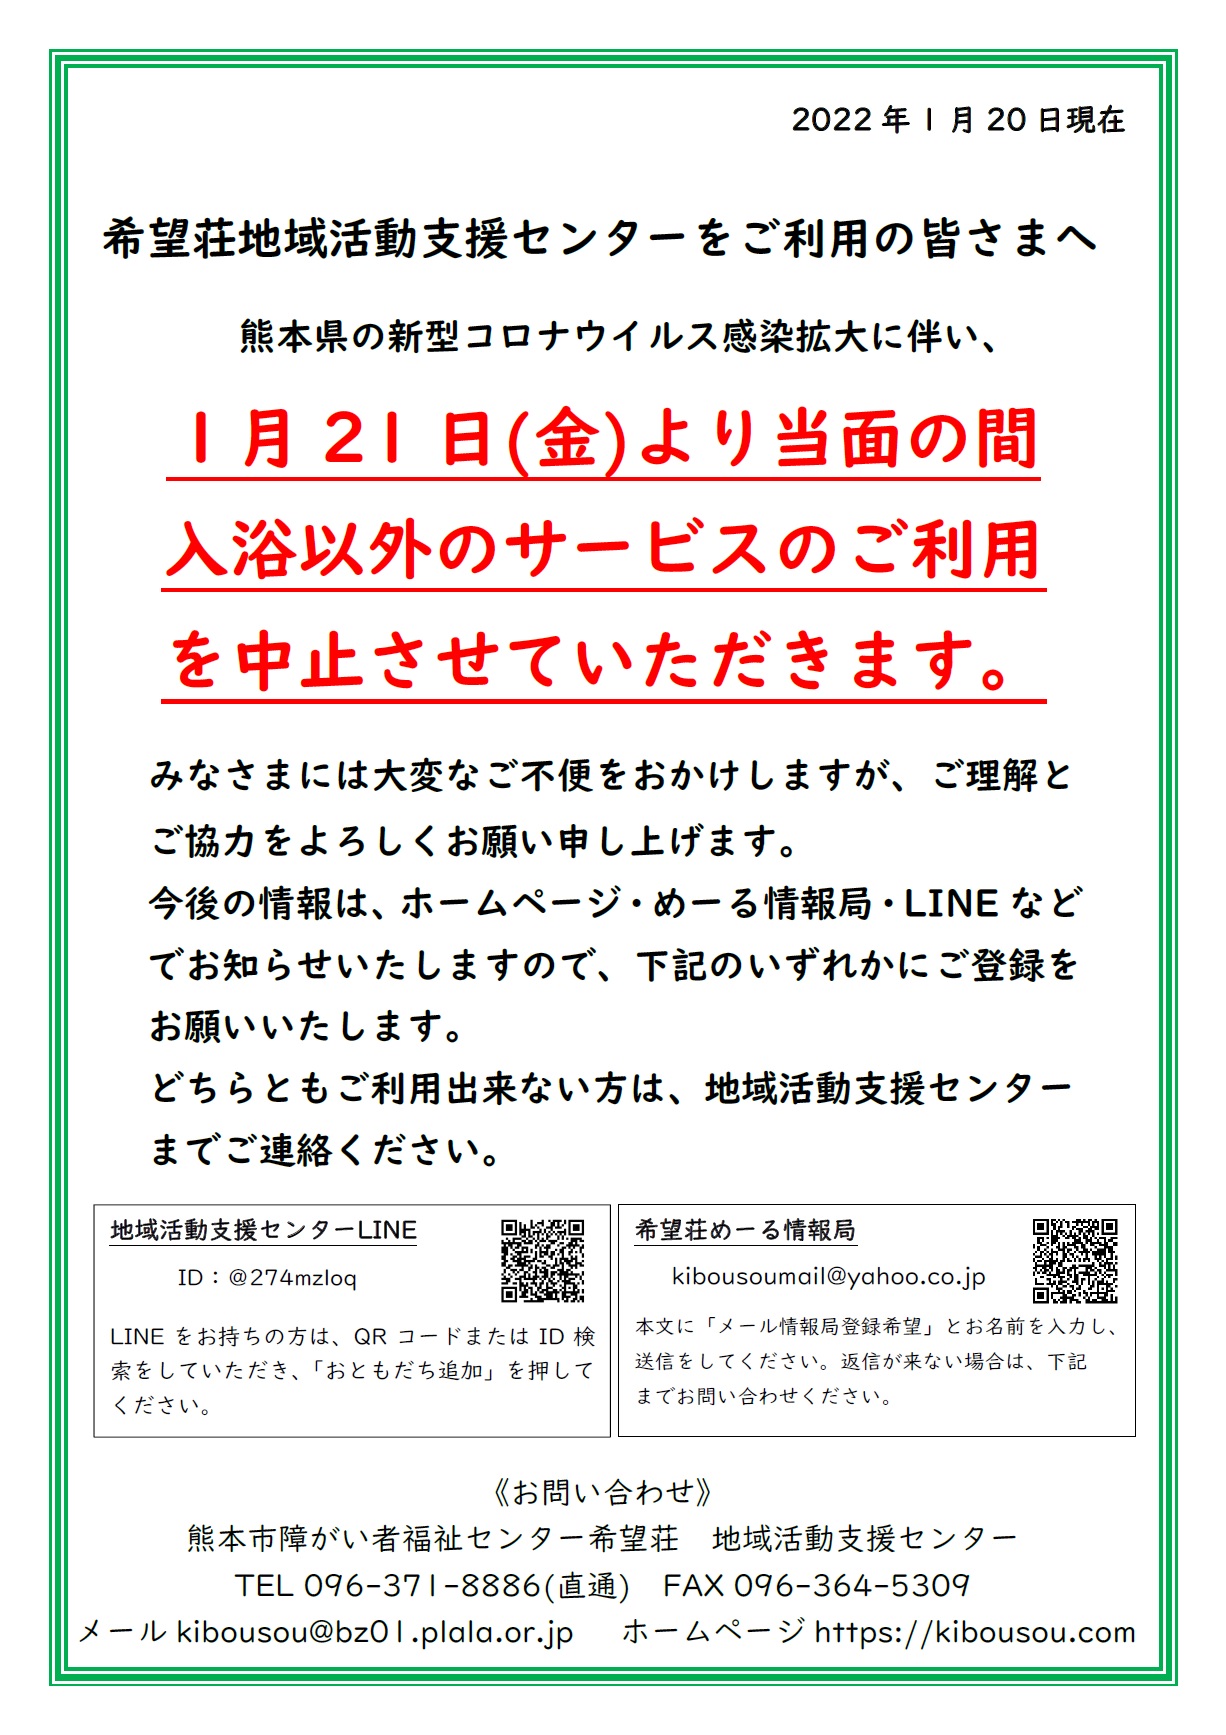 希望荘地域活動支援センターをご利用の皆さまへ。。。。。。熊本県の新型コロナウイルス感染拡大に伴い、１月21日(金)より当面の間、入浴以外のサービスのご利用を中止させていただきます。。。。みなさまには、大変なご不便をおかけしますが、ご理解とご協力をよろしくお願い申し上げます。。。今後の情報は、ホームページ・めーる情報局・LINEなどでお知らせいたしますので、いずれかにご登録・ご確認をお願いいたします。いずれもご利用出来ない方は、地域活動支援センターまでご連絡ください。　直通電話番号：096-371-8886。。。。。